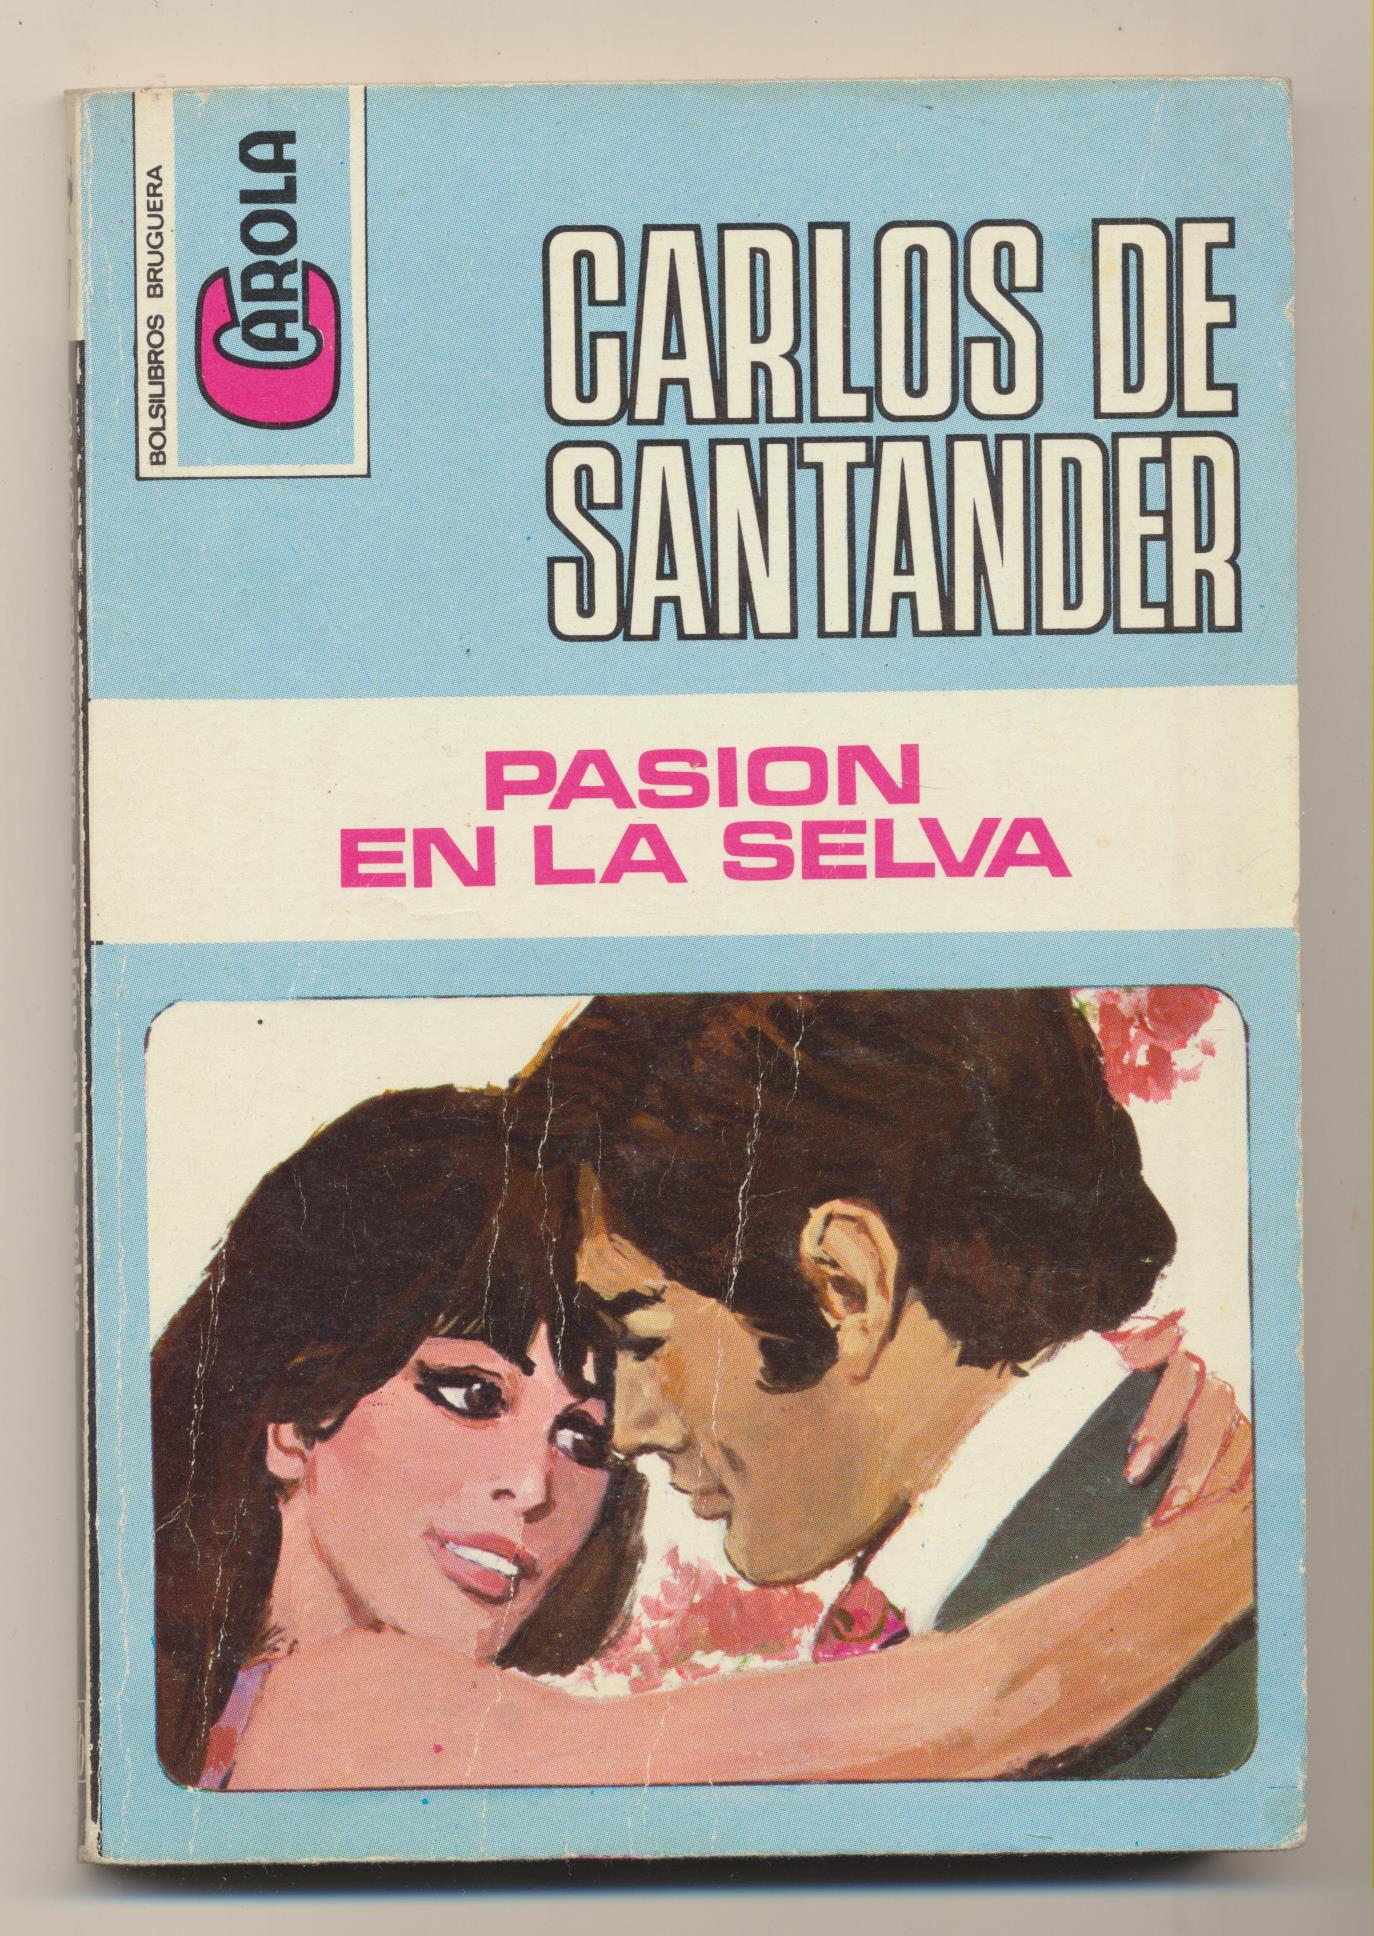 Carola nº 317. Pasión en la selva por Carlos de Santander. 2ª Edición Bruguera 1972